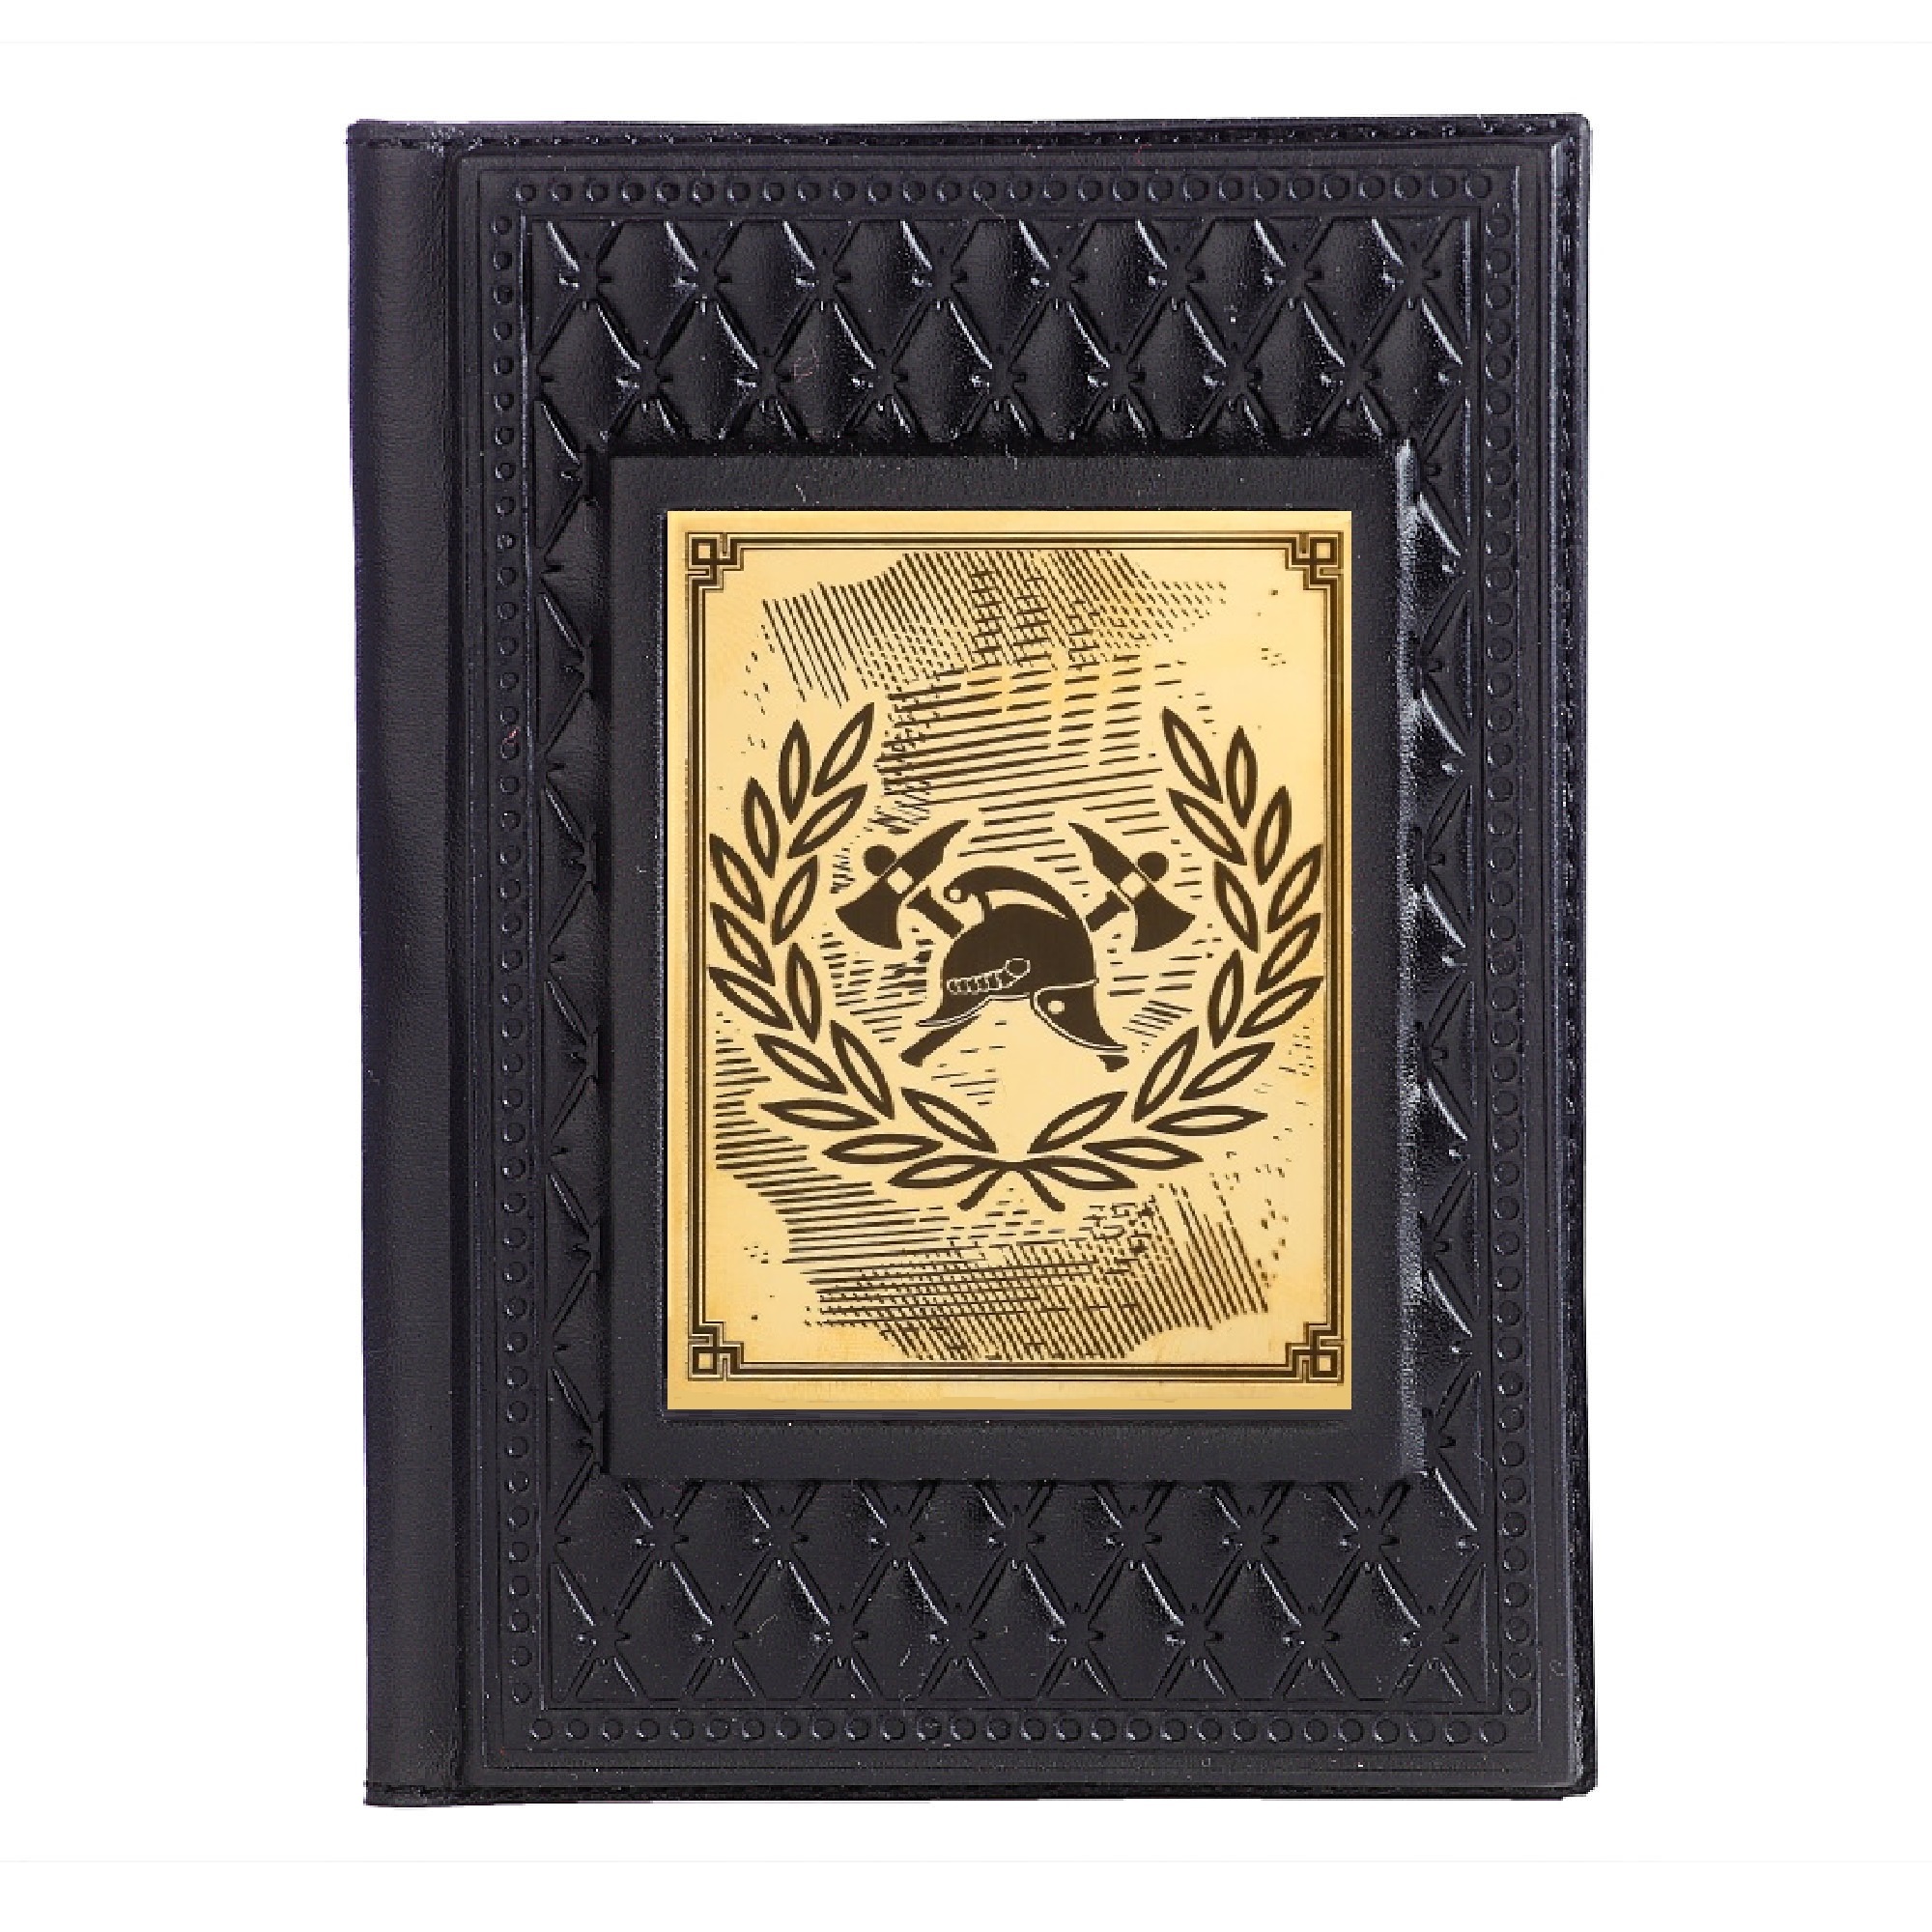 Обложка для паспорта Пожарному-4 с накладкой покрытой золотом 999 пробы 009-14-62-13